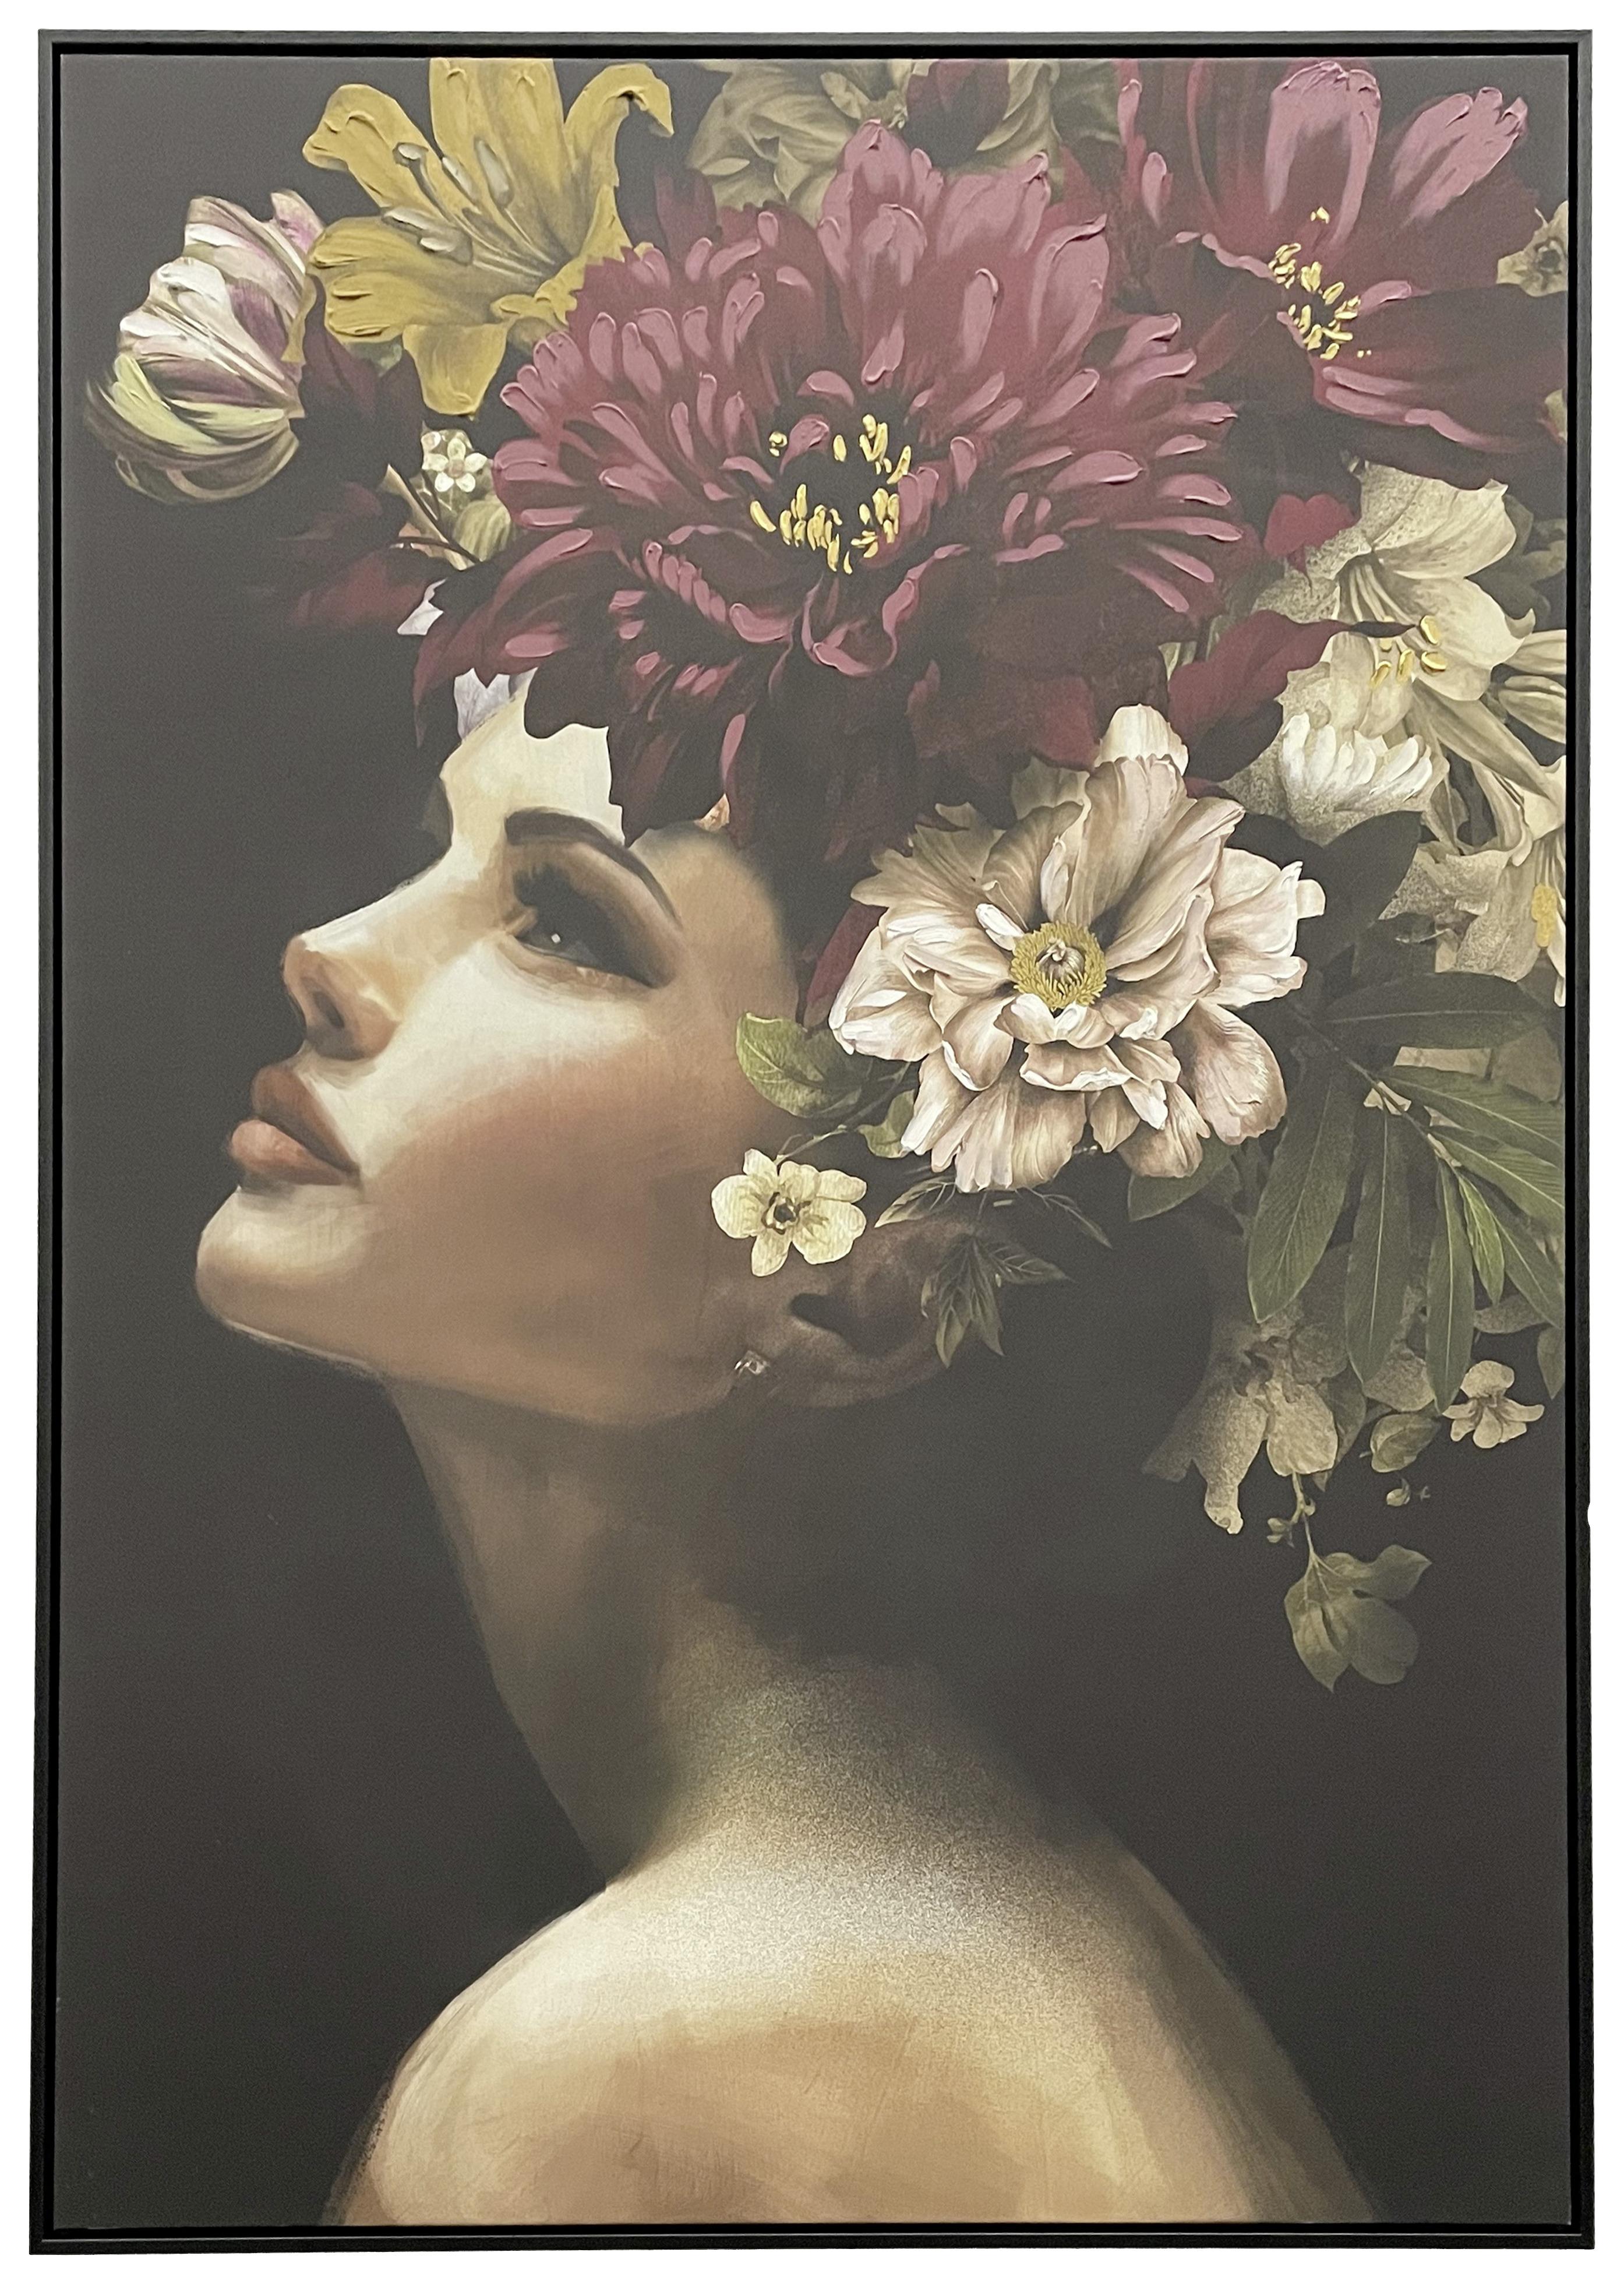 Obraz Na Plátně Denise, 100/140cm - černá/přírodní barvy, dřevo/textil (100/140cm) - Modern Living